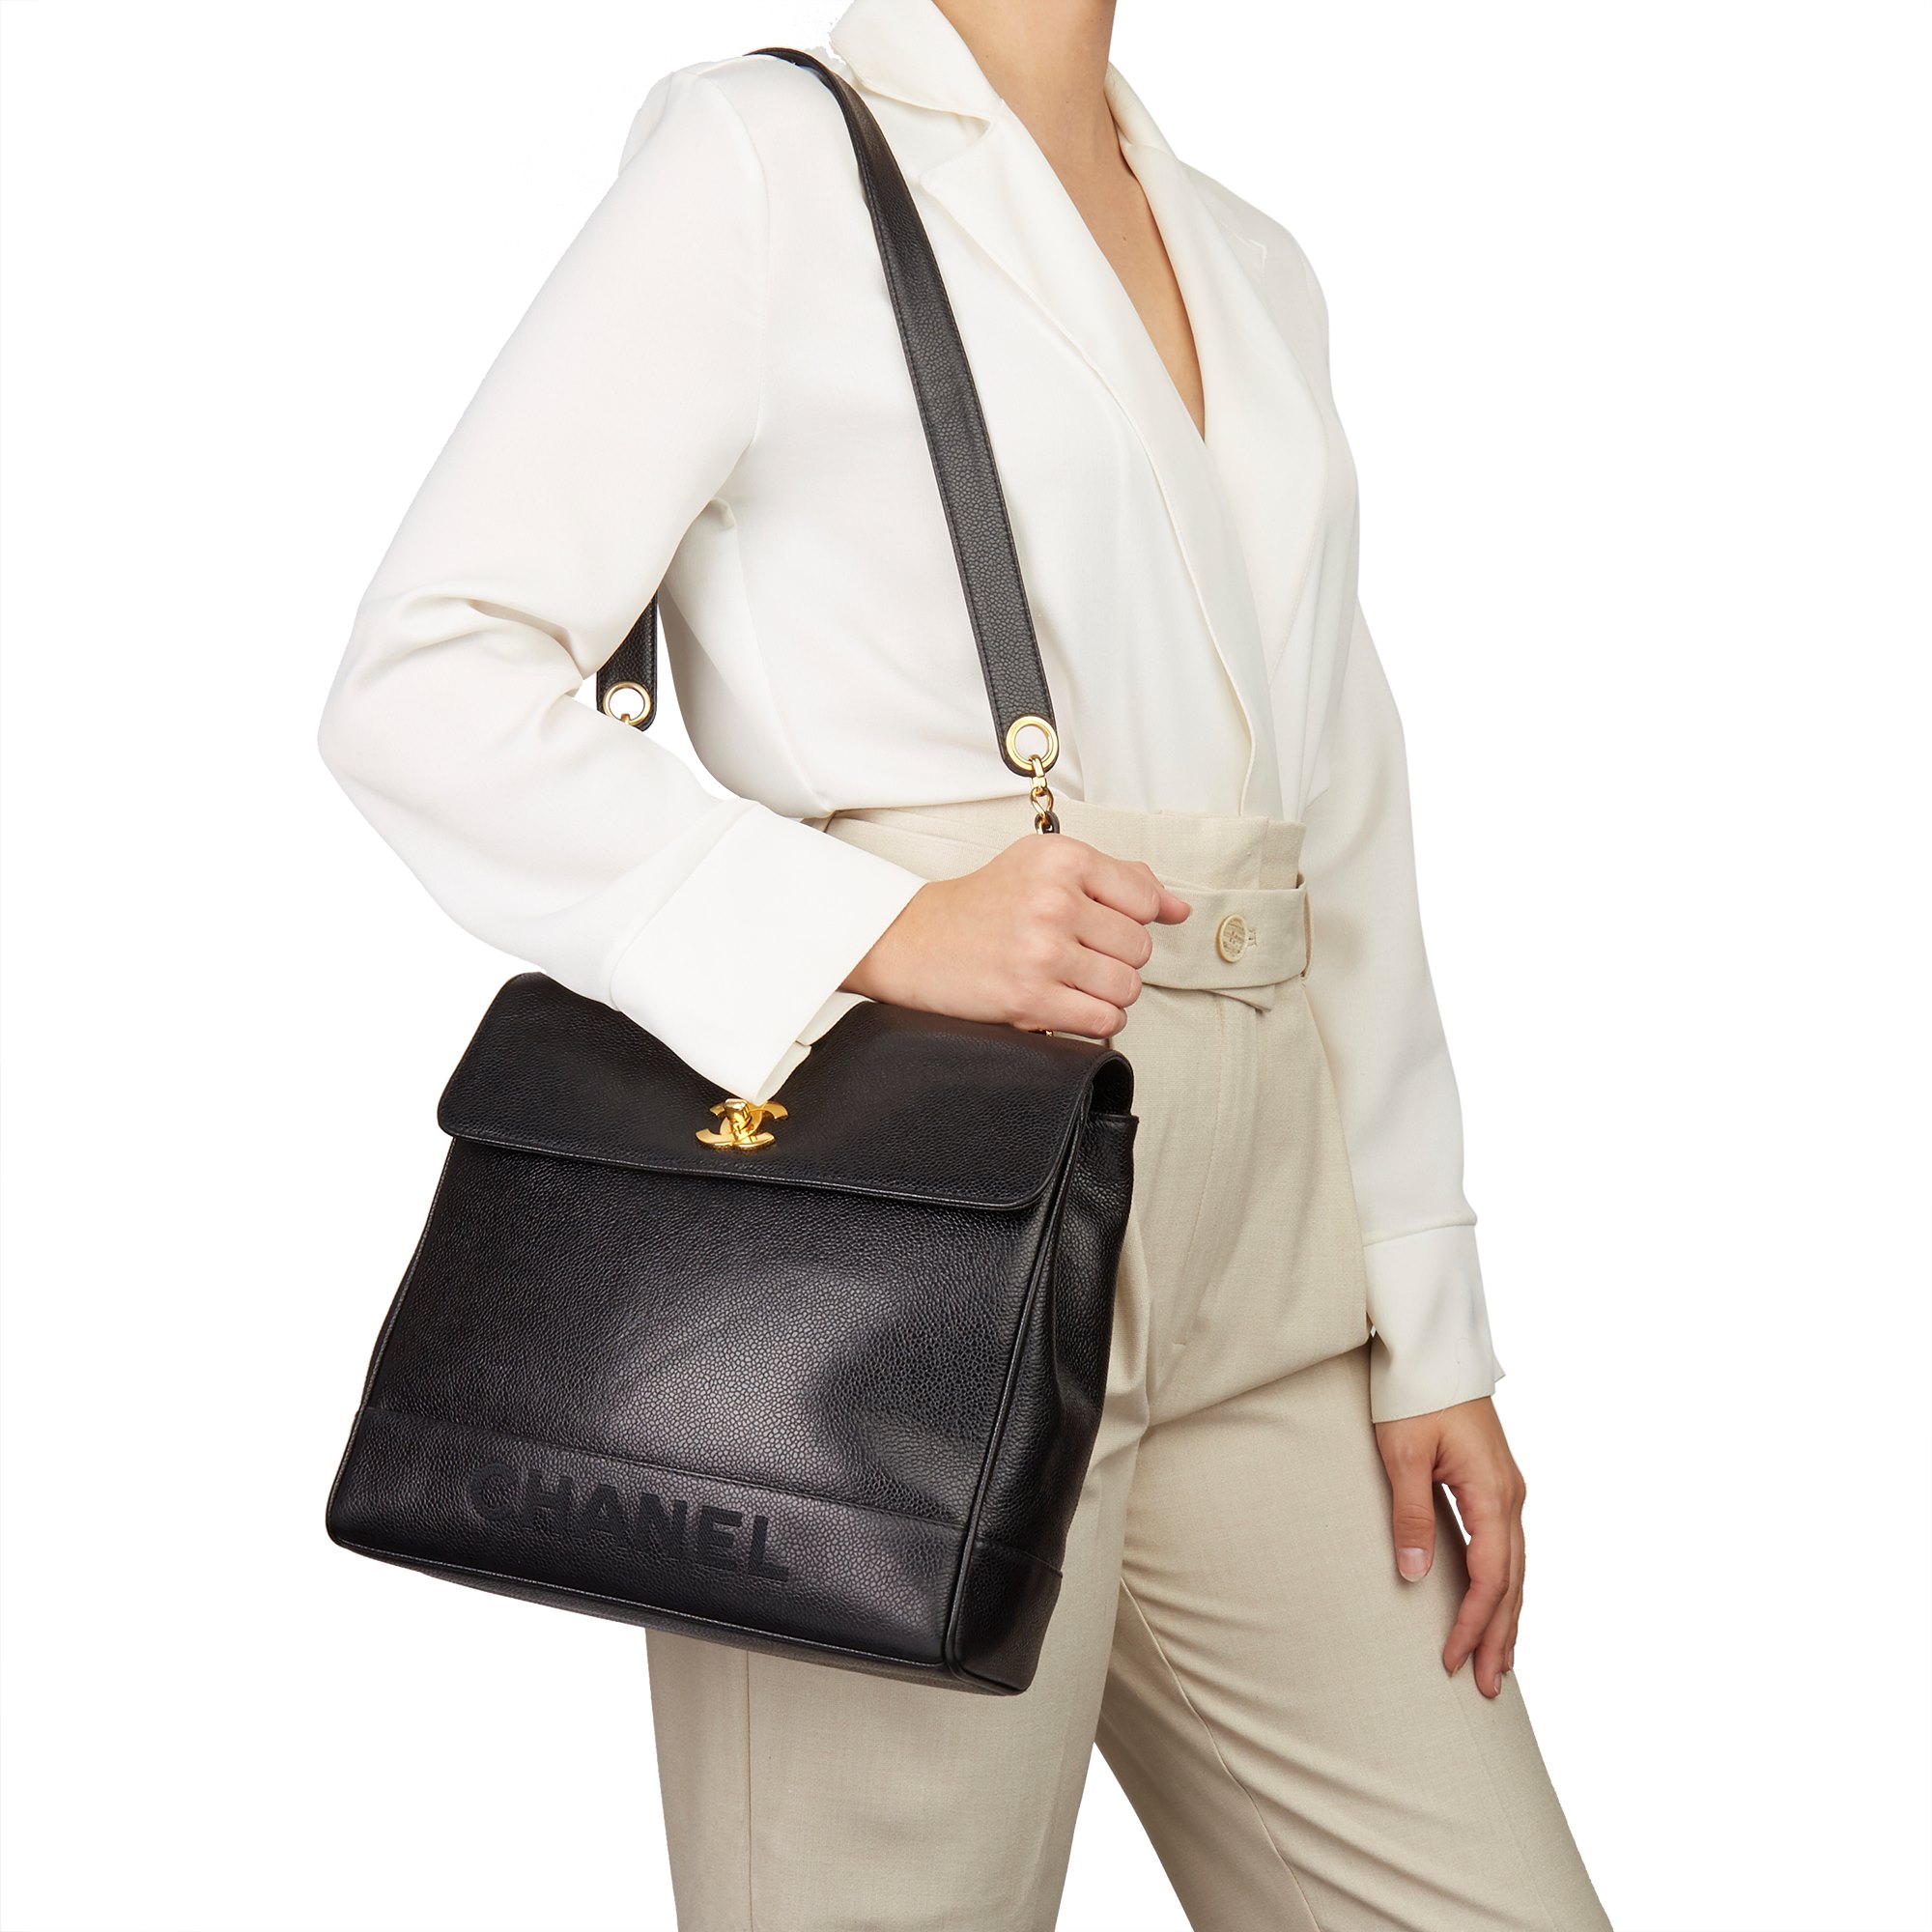 Chanel Classic Shoulder Bag 1996 HB3018 | Second Hand Handbags